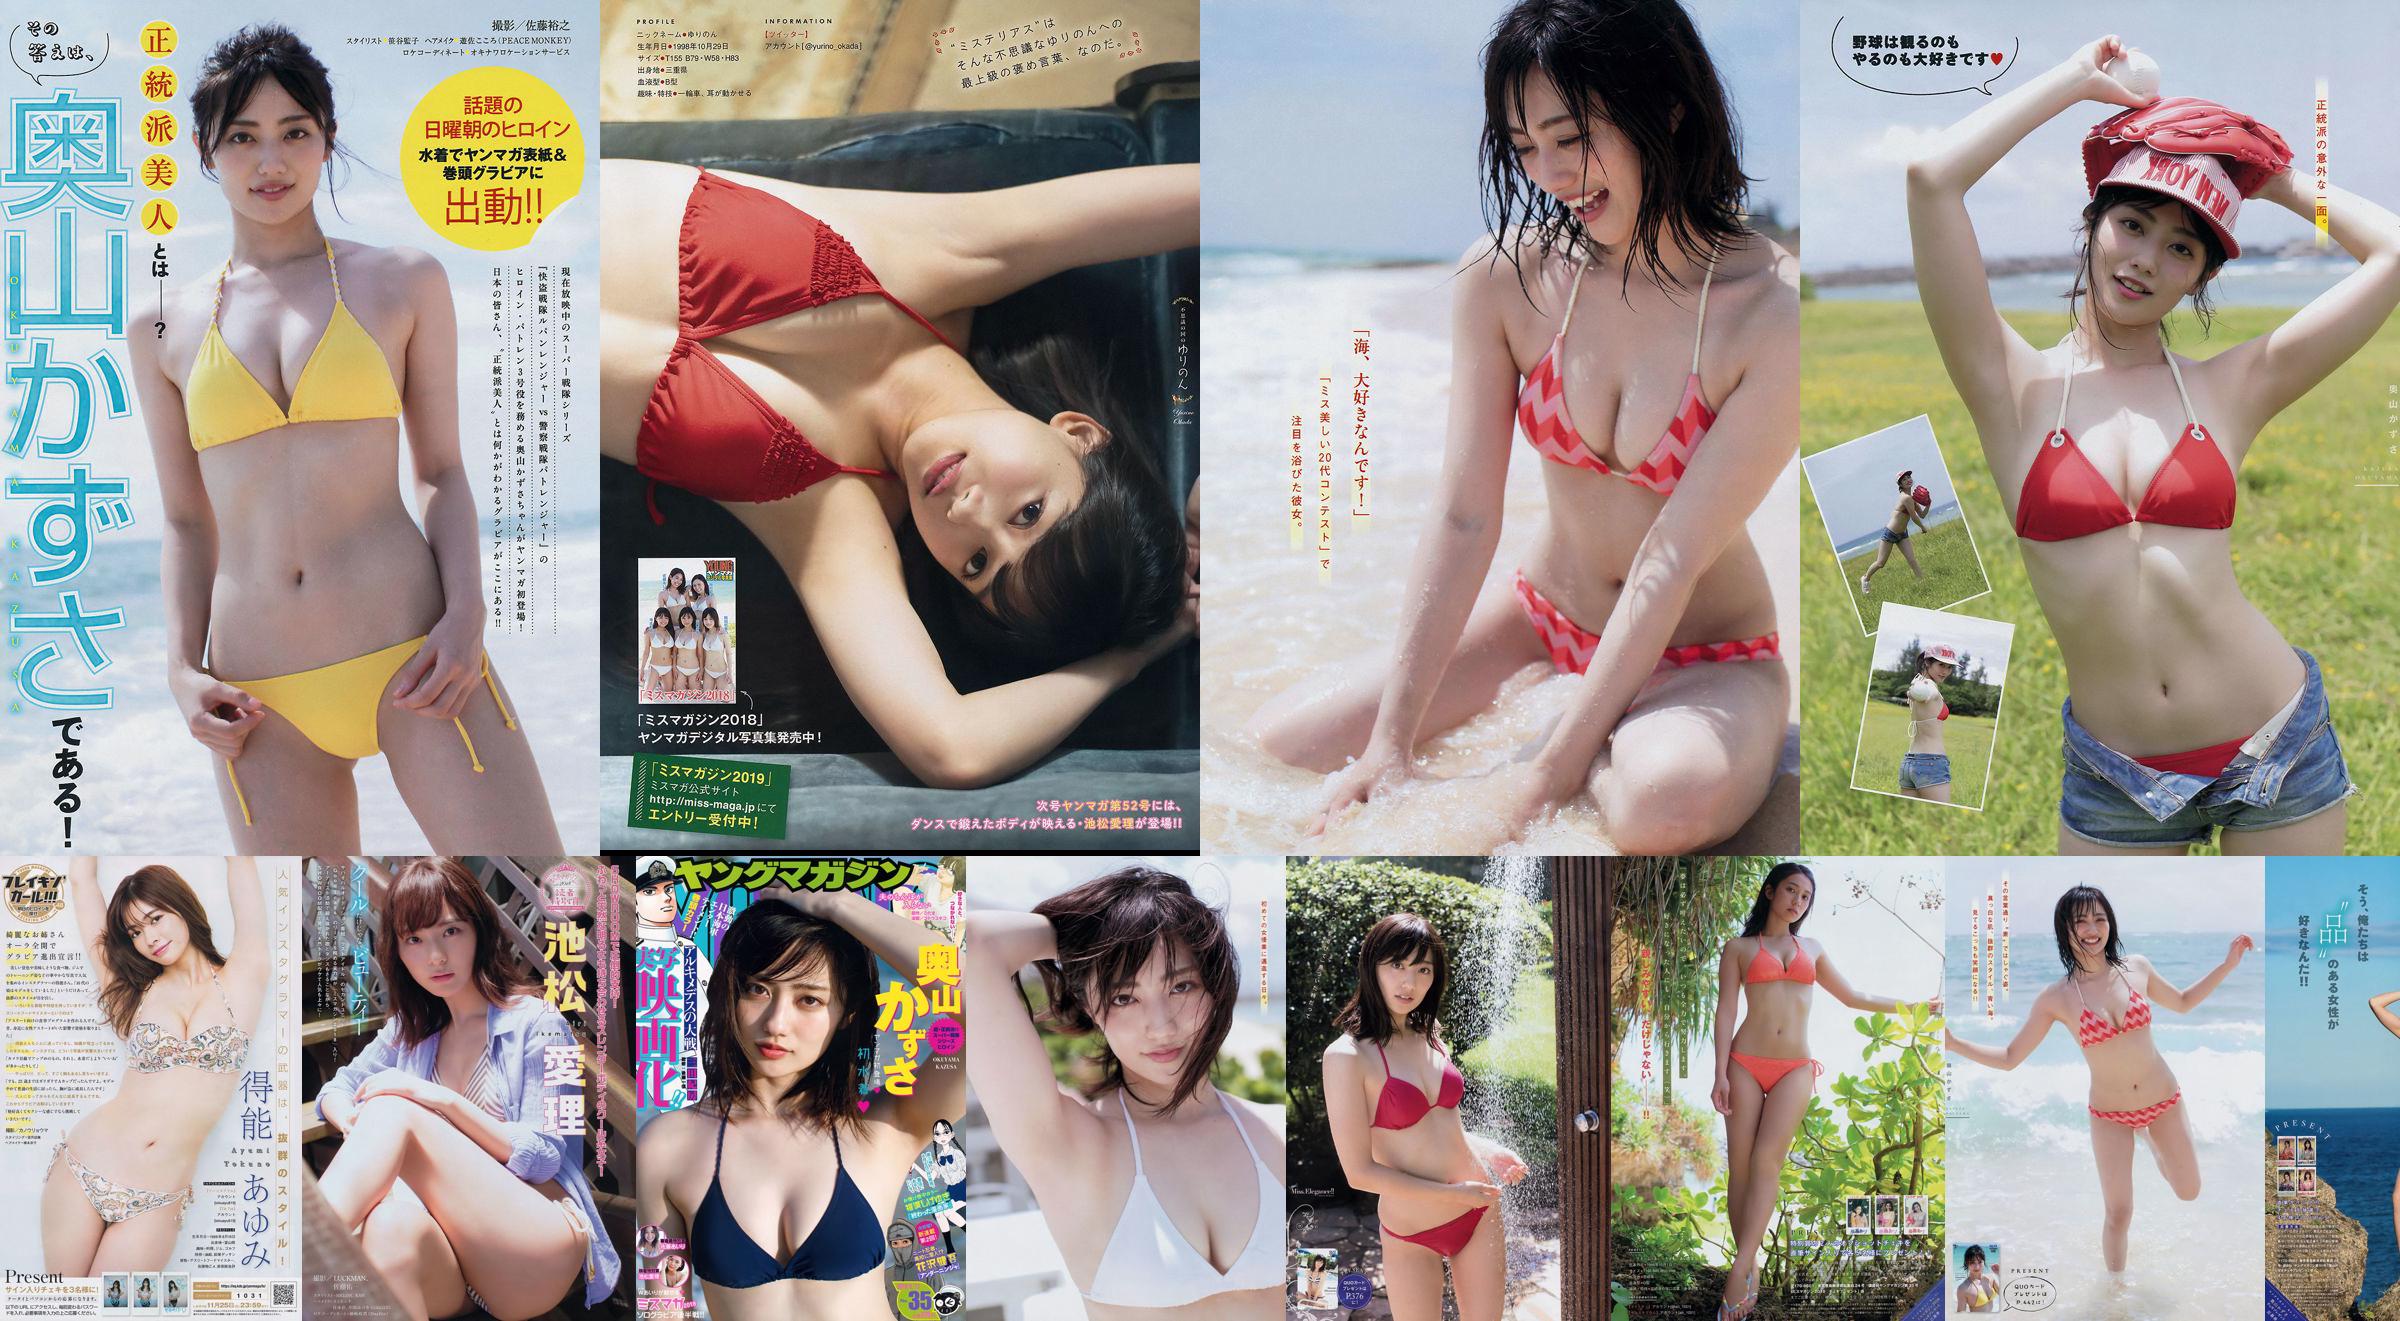 [Revista Young] Kazusa Okuyama Airi Sato Airi Ikematsu 2018 No.35 Photo Mori No.479b5b Página 4